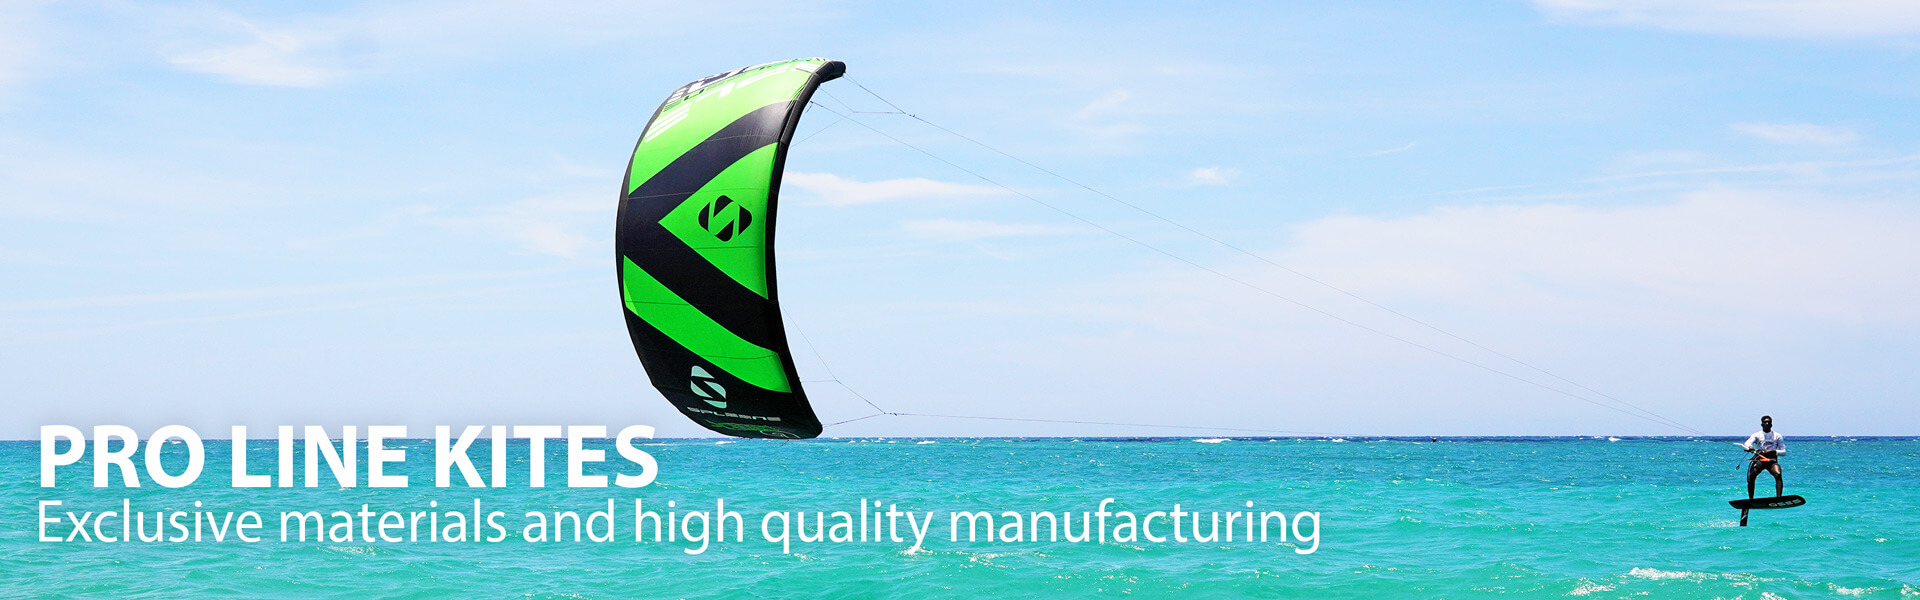 Pro Line Kites Banner - SPLEENE Kiteboarding